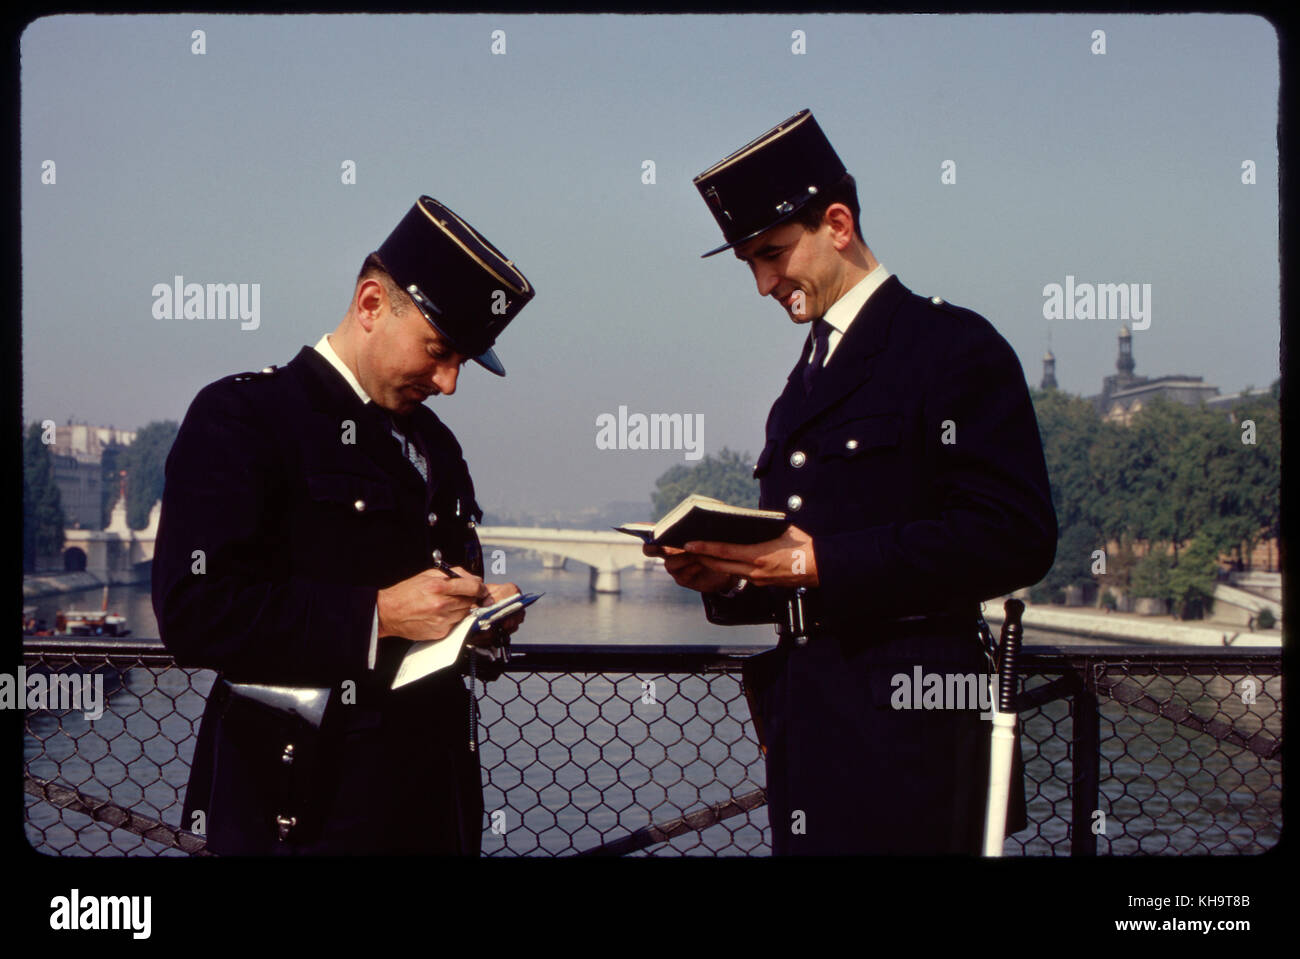 Two Policemen, Pont de Arts, Paris, France, 1963 Stock Photo